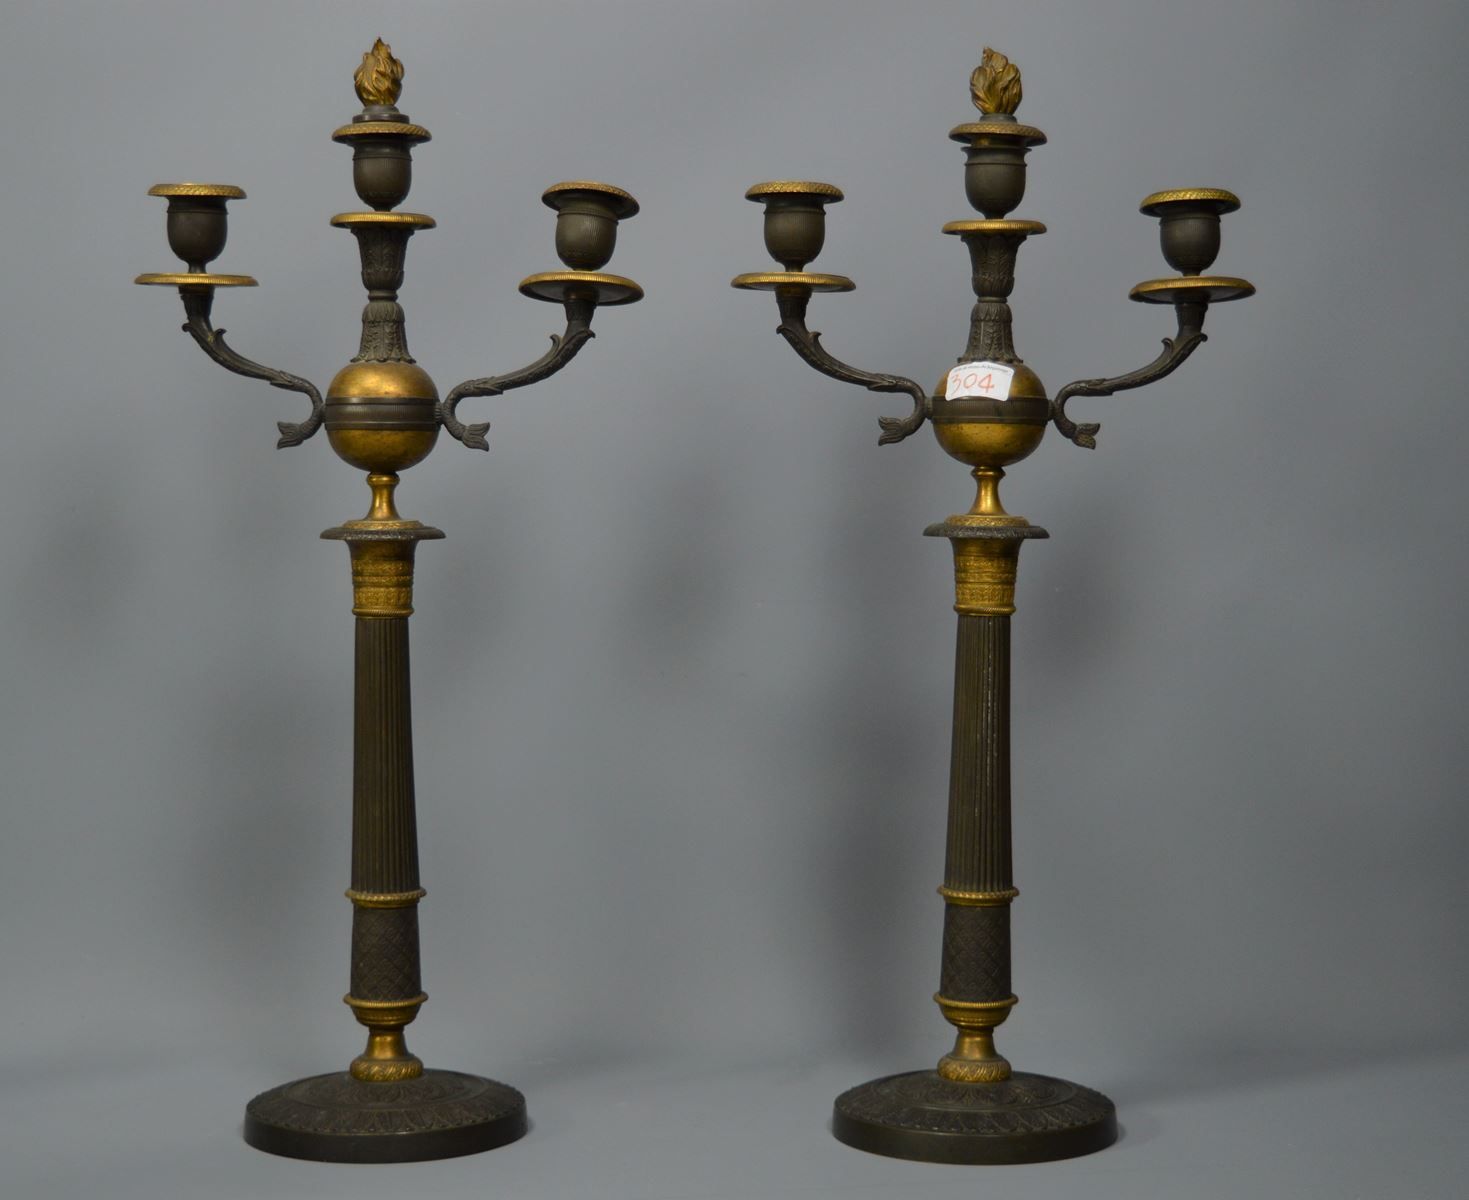 Null Paire de chandeliers en bronze 2 patines de style Empire XIXème - 55 cm